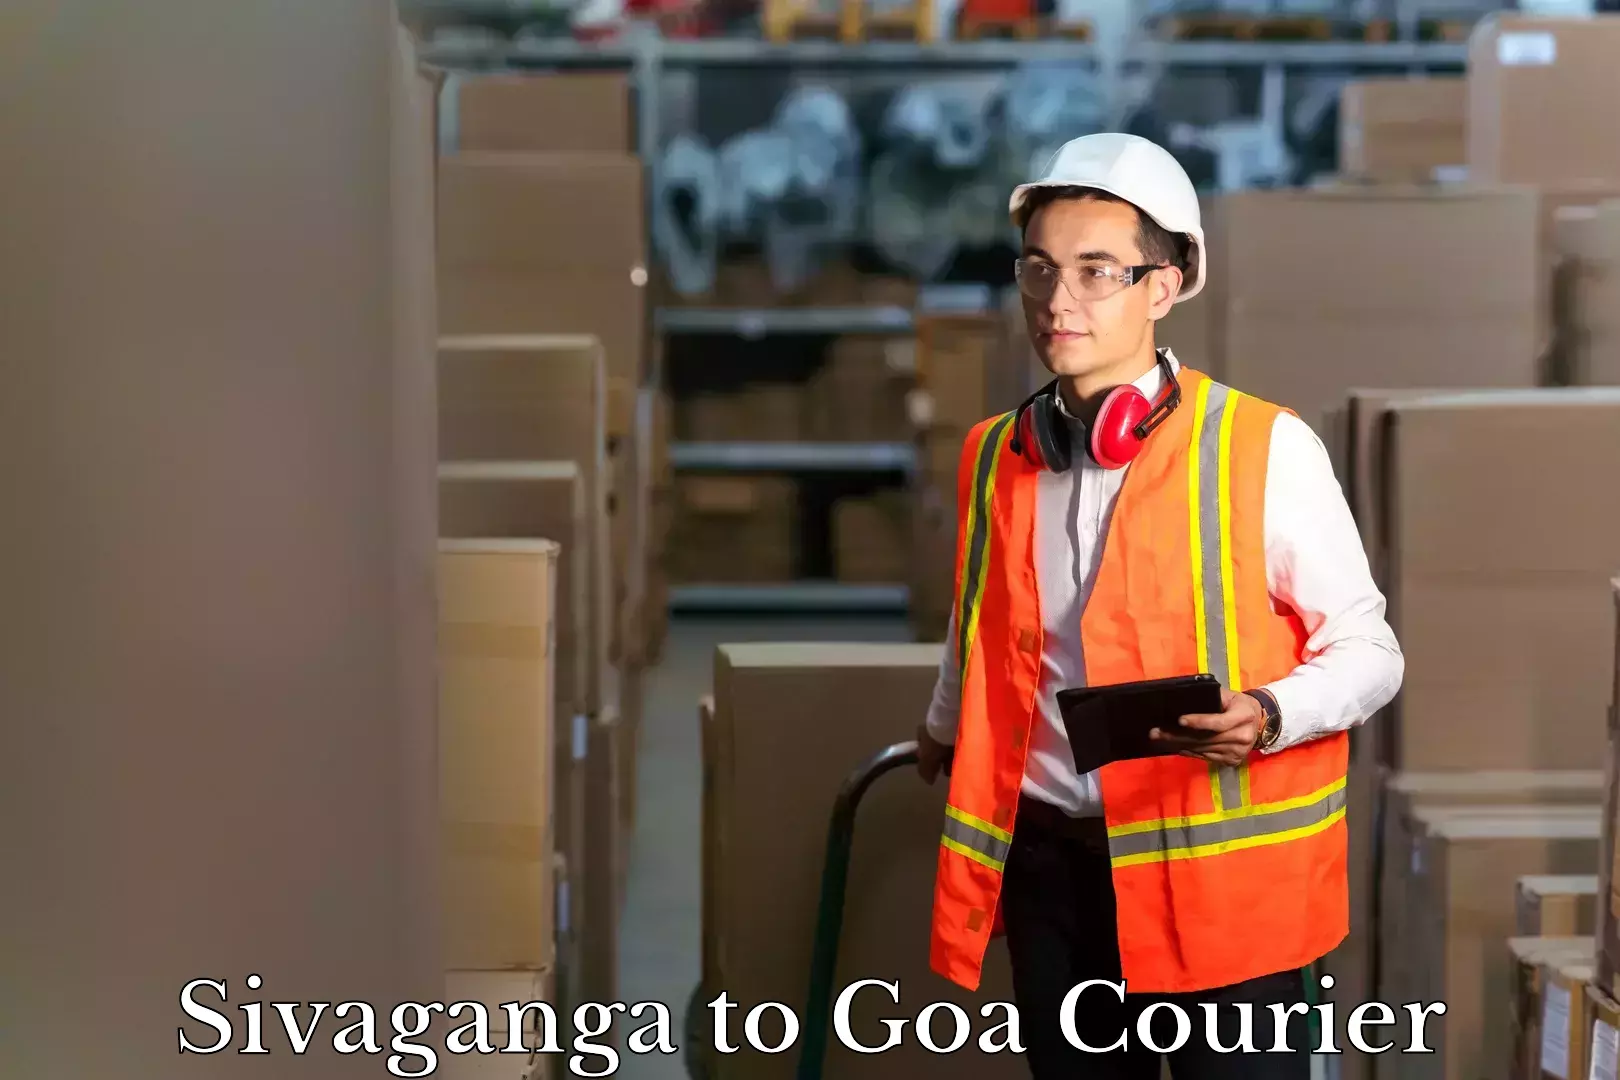 Baggage shipping service Sivaganga to Goa